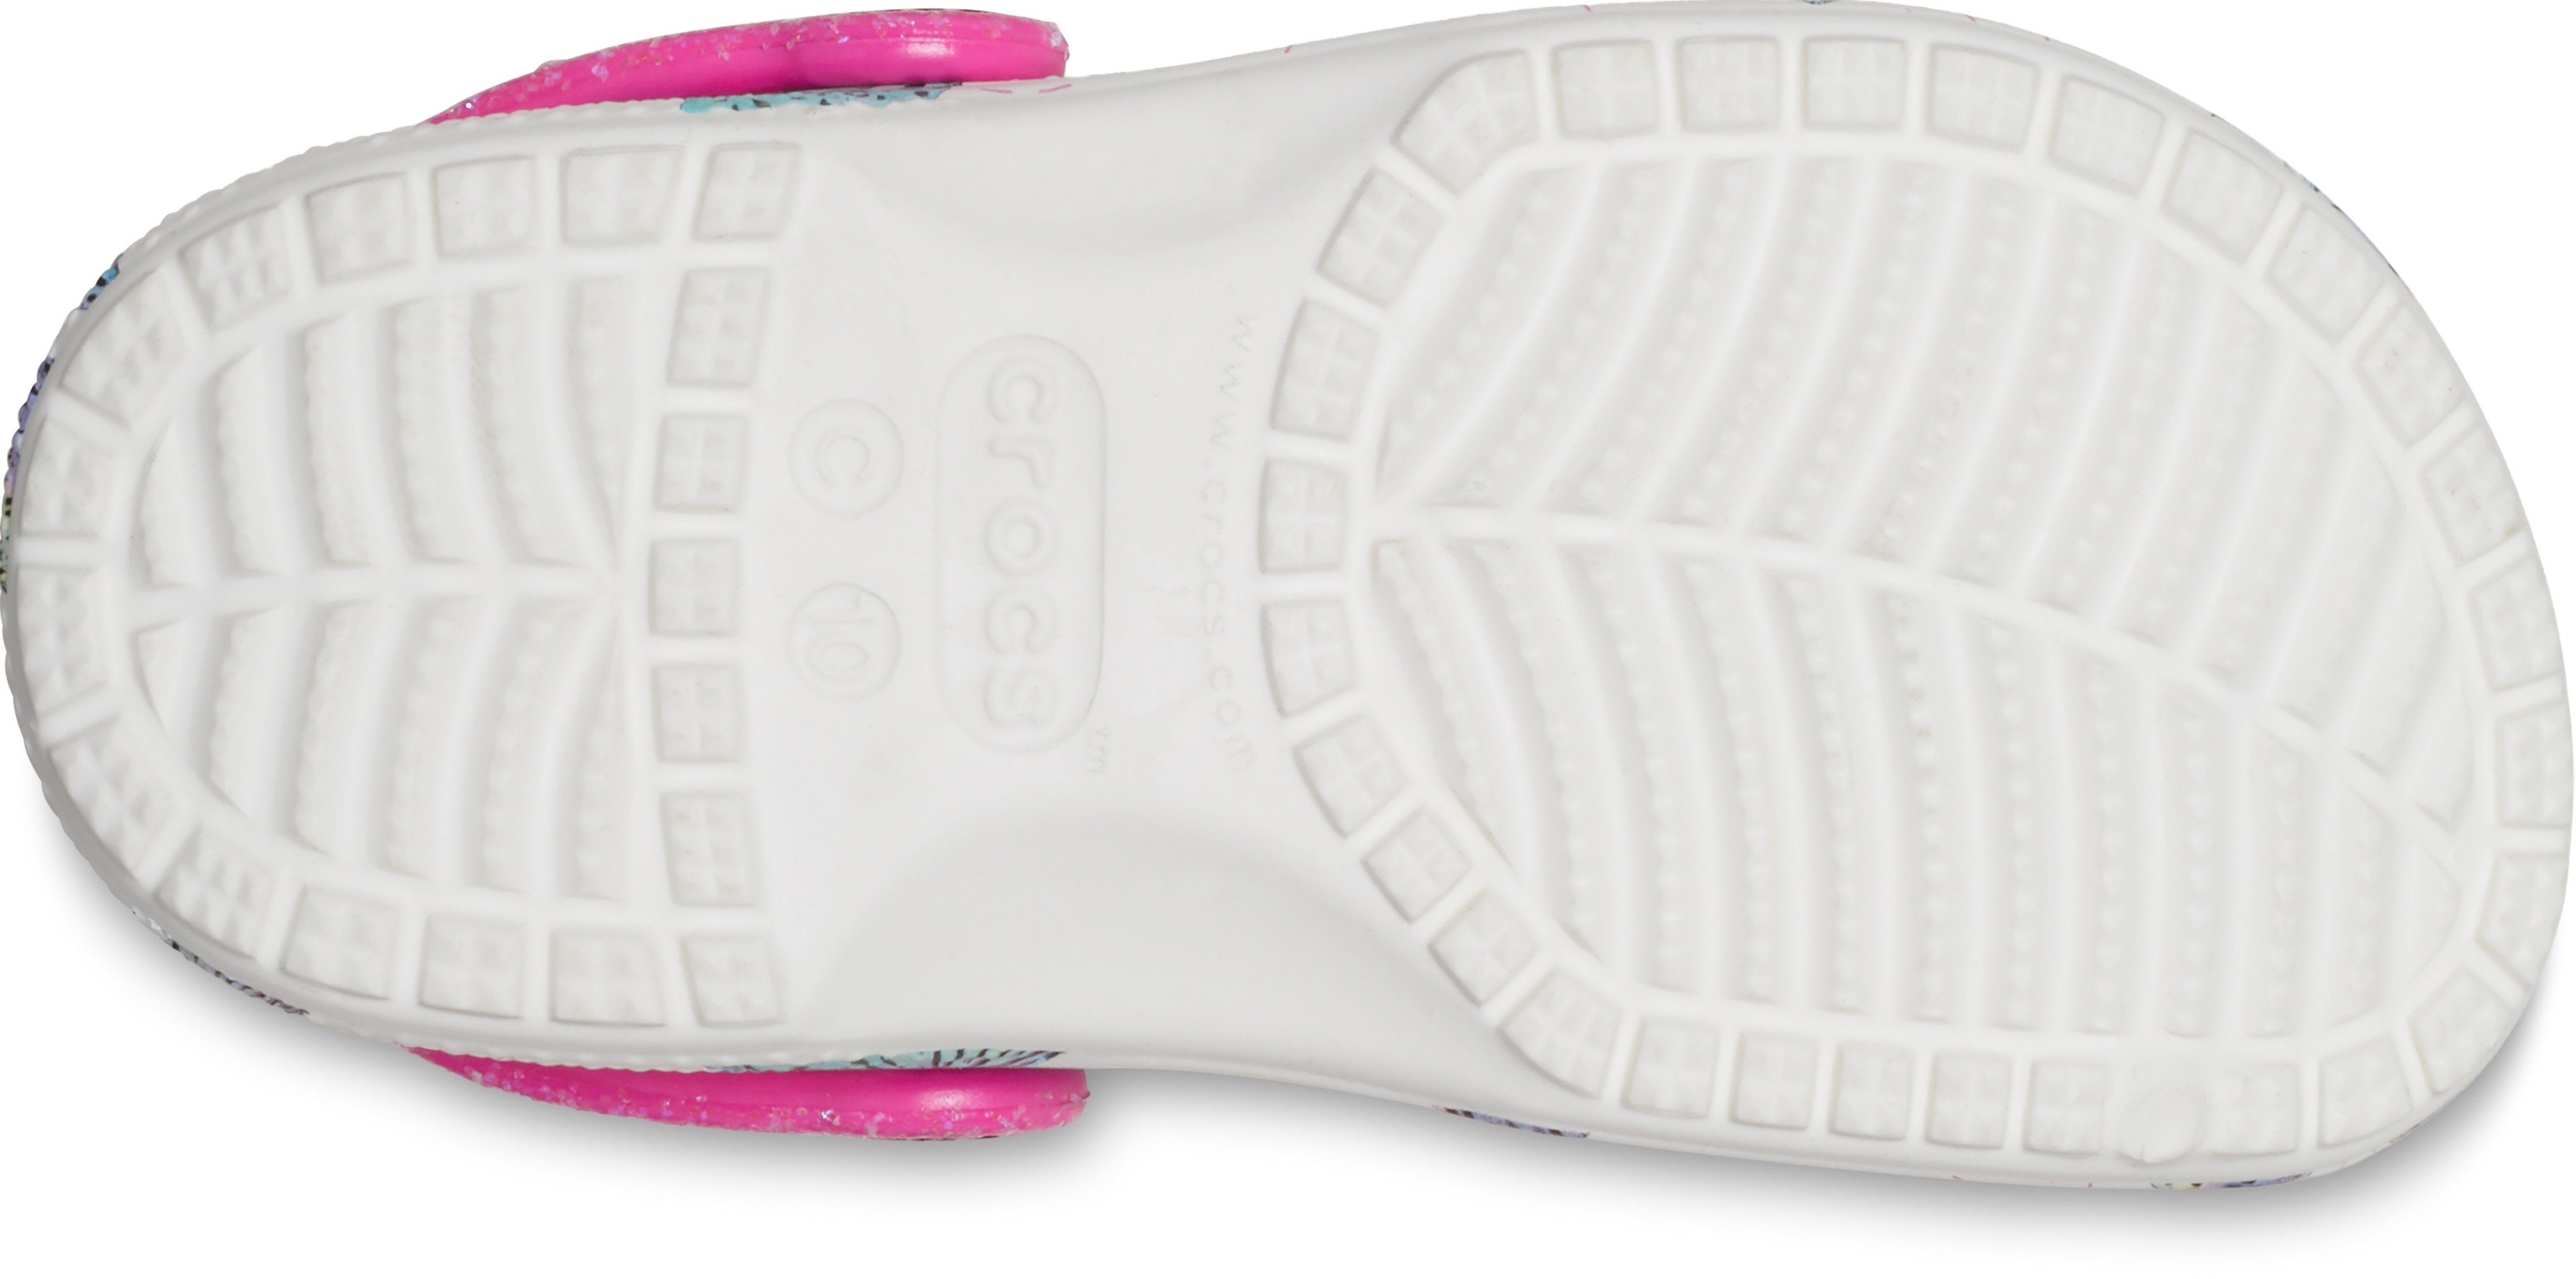 Crocs Hausschuh weiß-pink-Schmetterling mit Fersenriemen